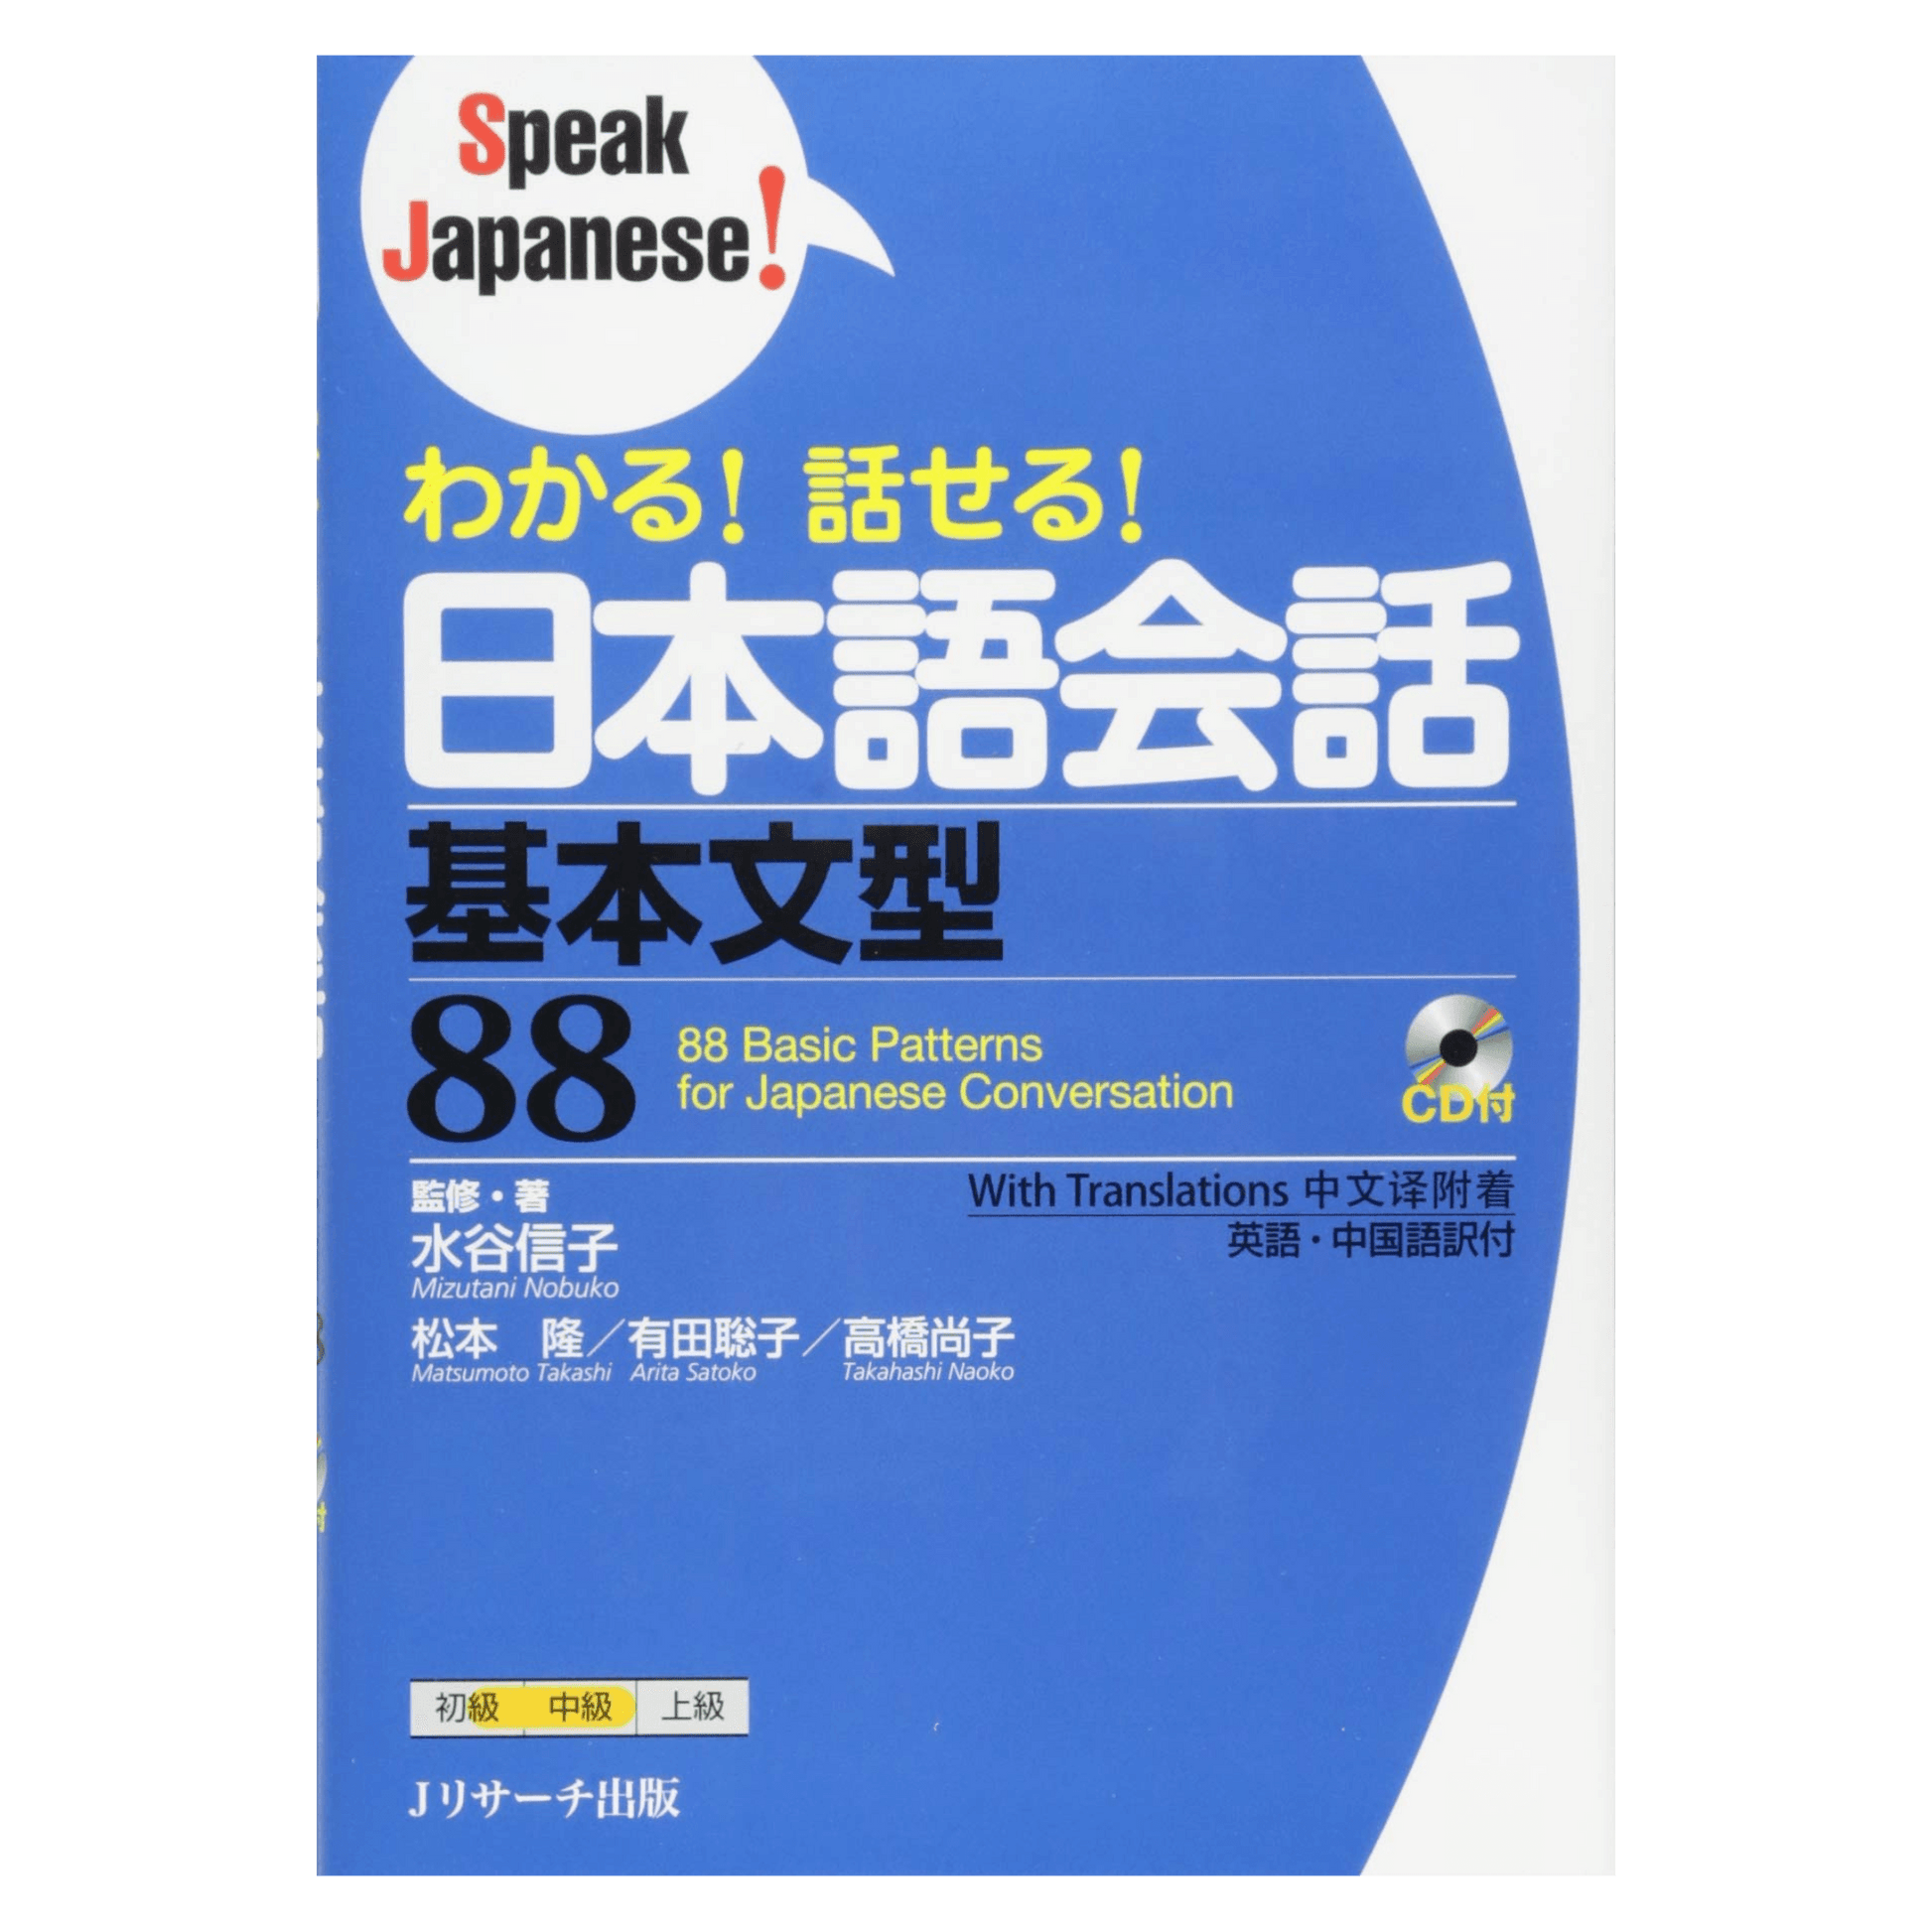 日语手册 | 说日语！わかる!话せる!日本语会话 ChitoroShop